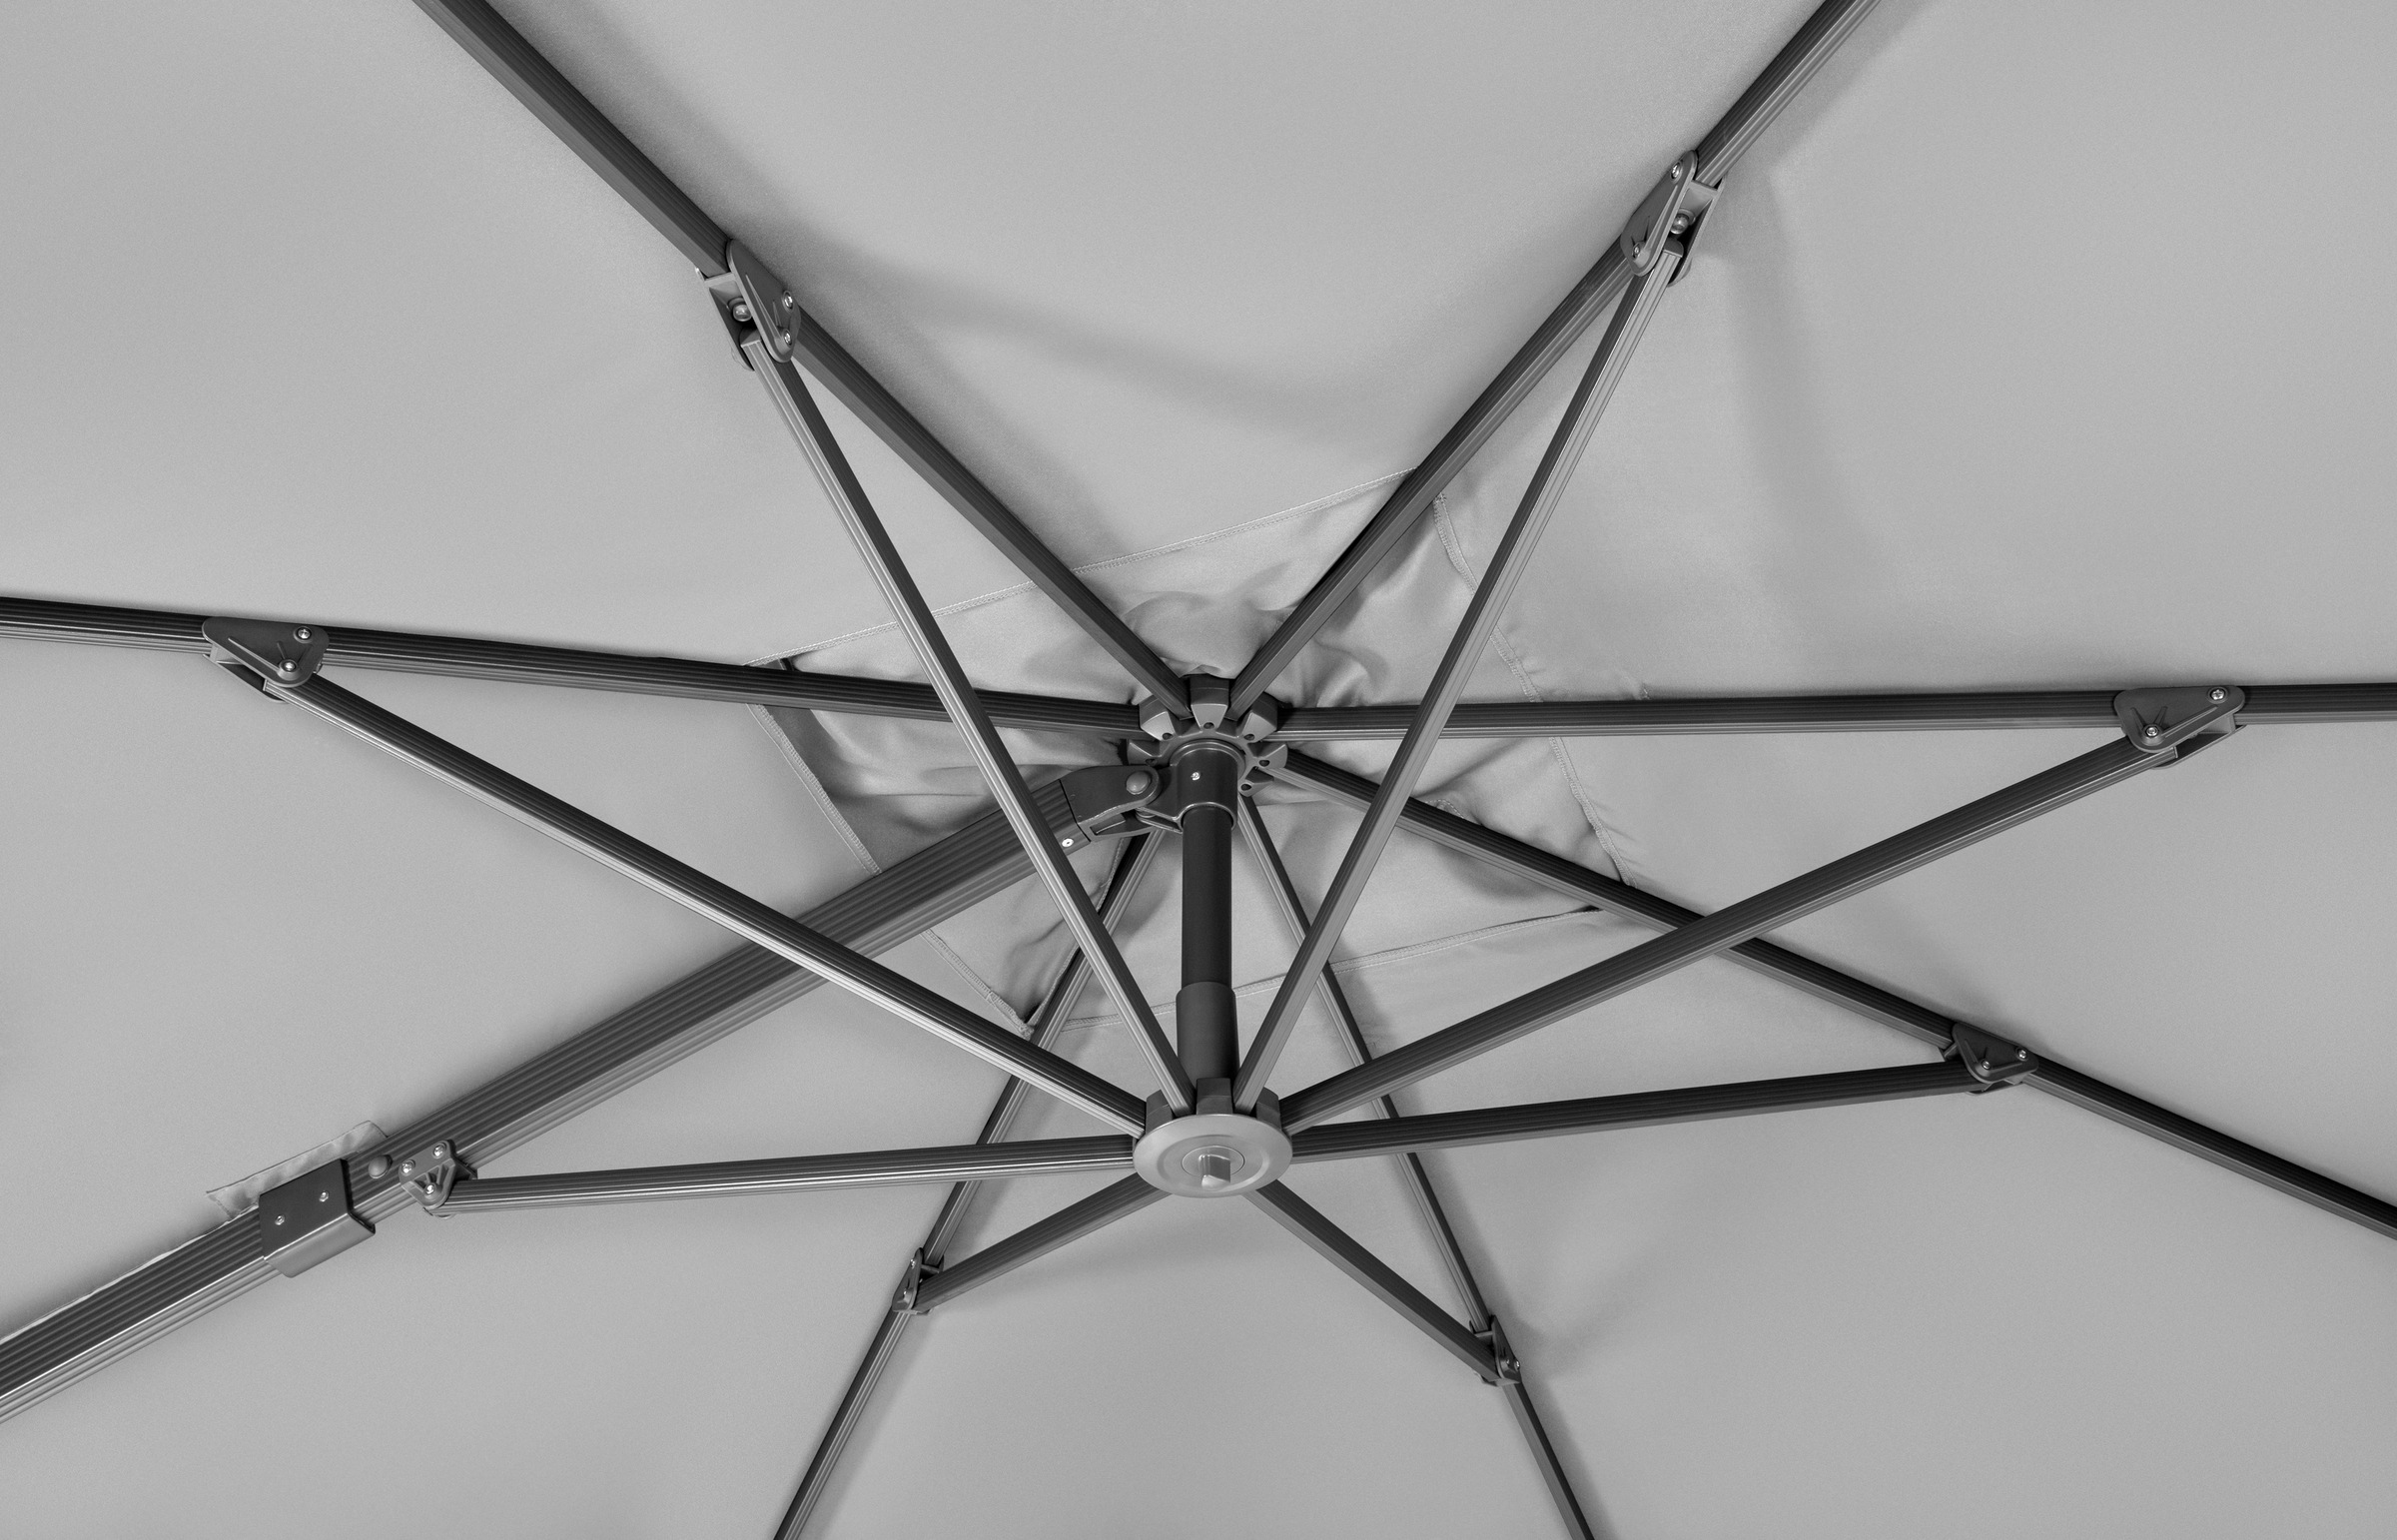 Schneider Schirme Ampelschirm »Rhodos Smart«, BxL: 300x300 cm, Alu/Polyester, inkl. Plattenständer/Schutzhülle